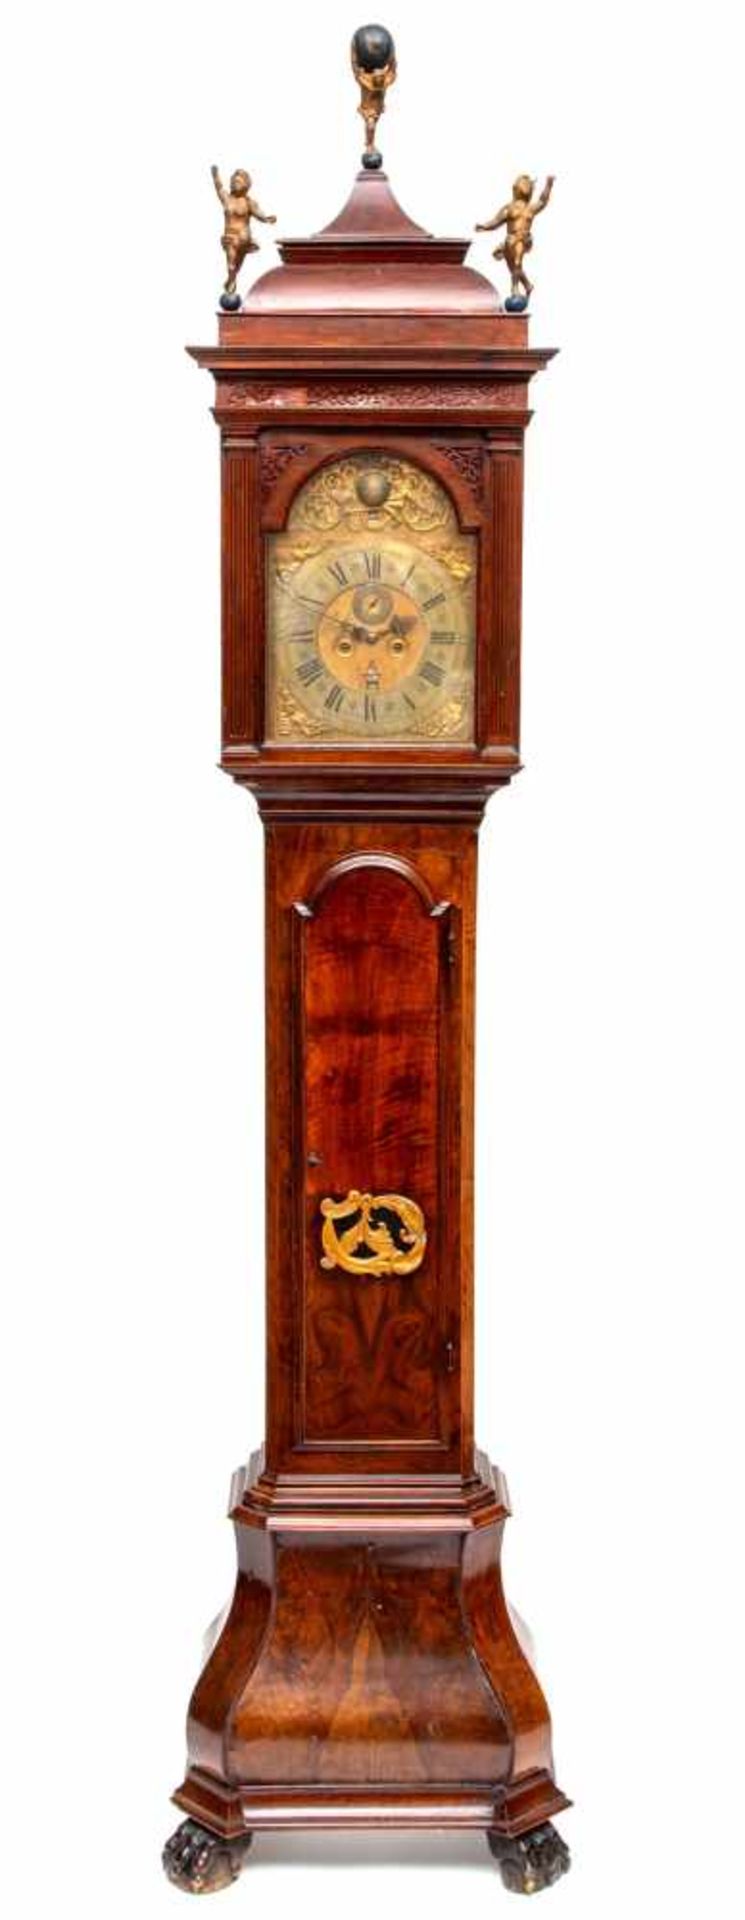 Staande horloge, eerste helft 18e eeuw,met messing wijzerplaat en verguld bronzen hoekstukken. Met